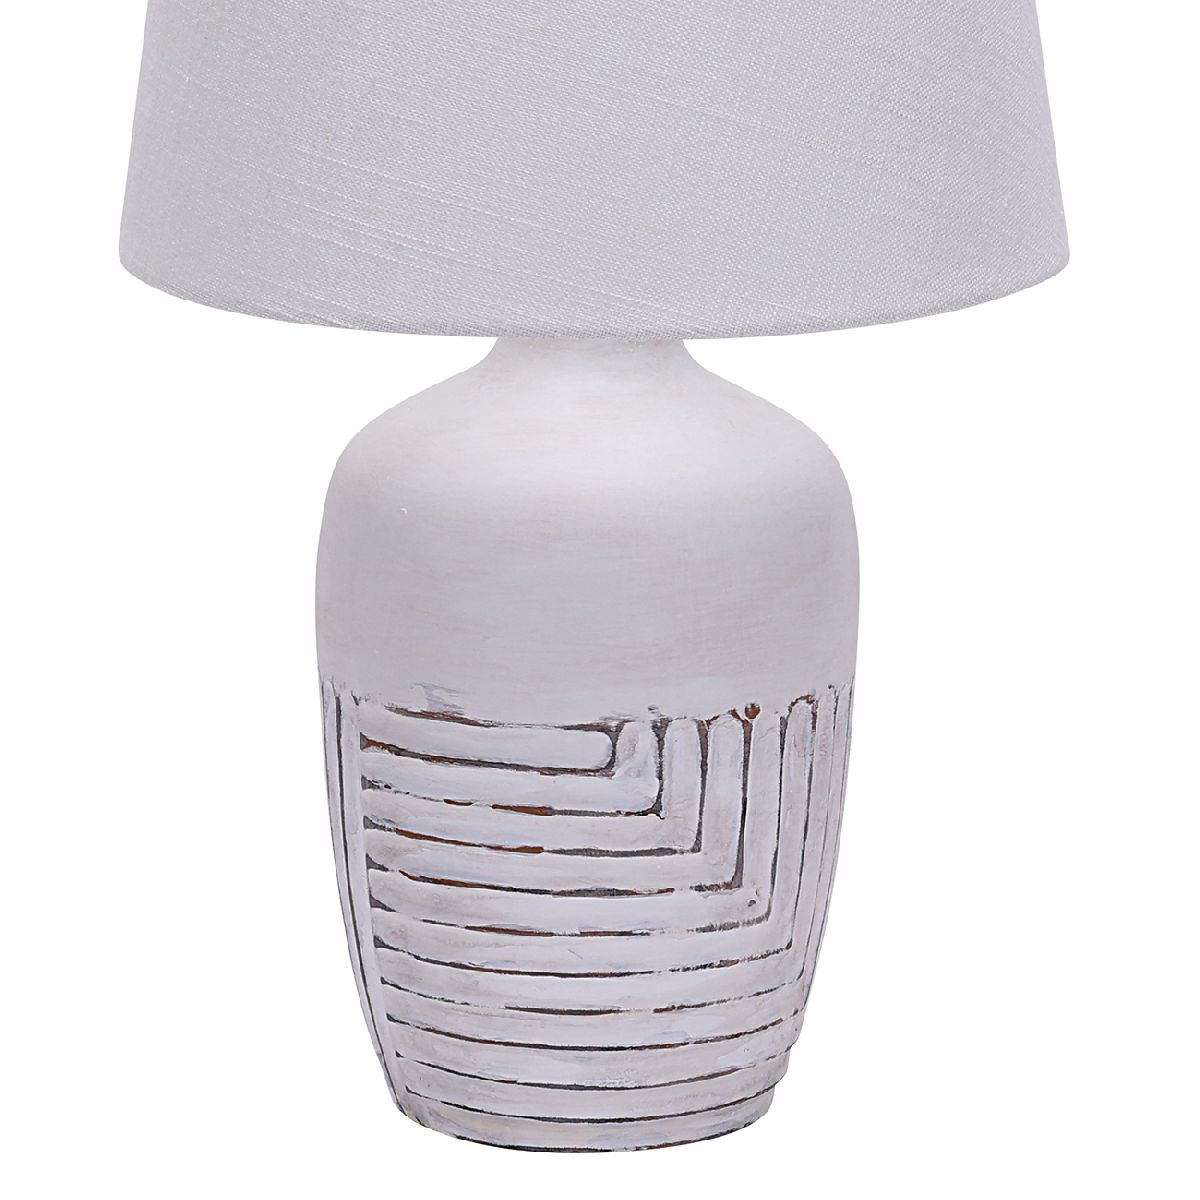 Настольная лампа Escada Antey 10195/L White